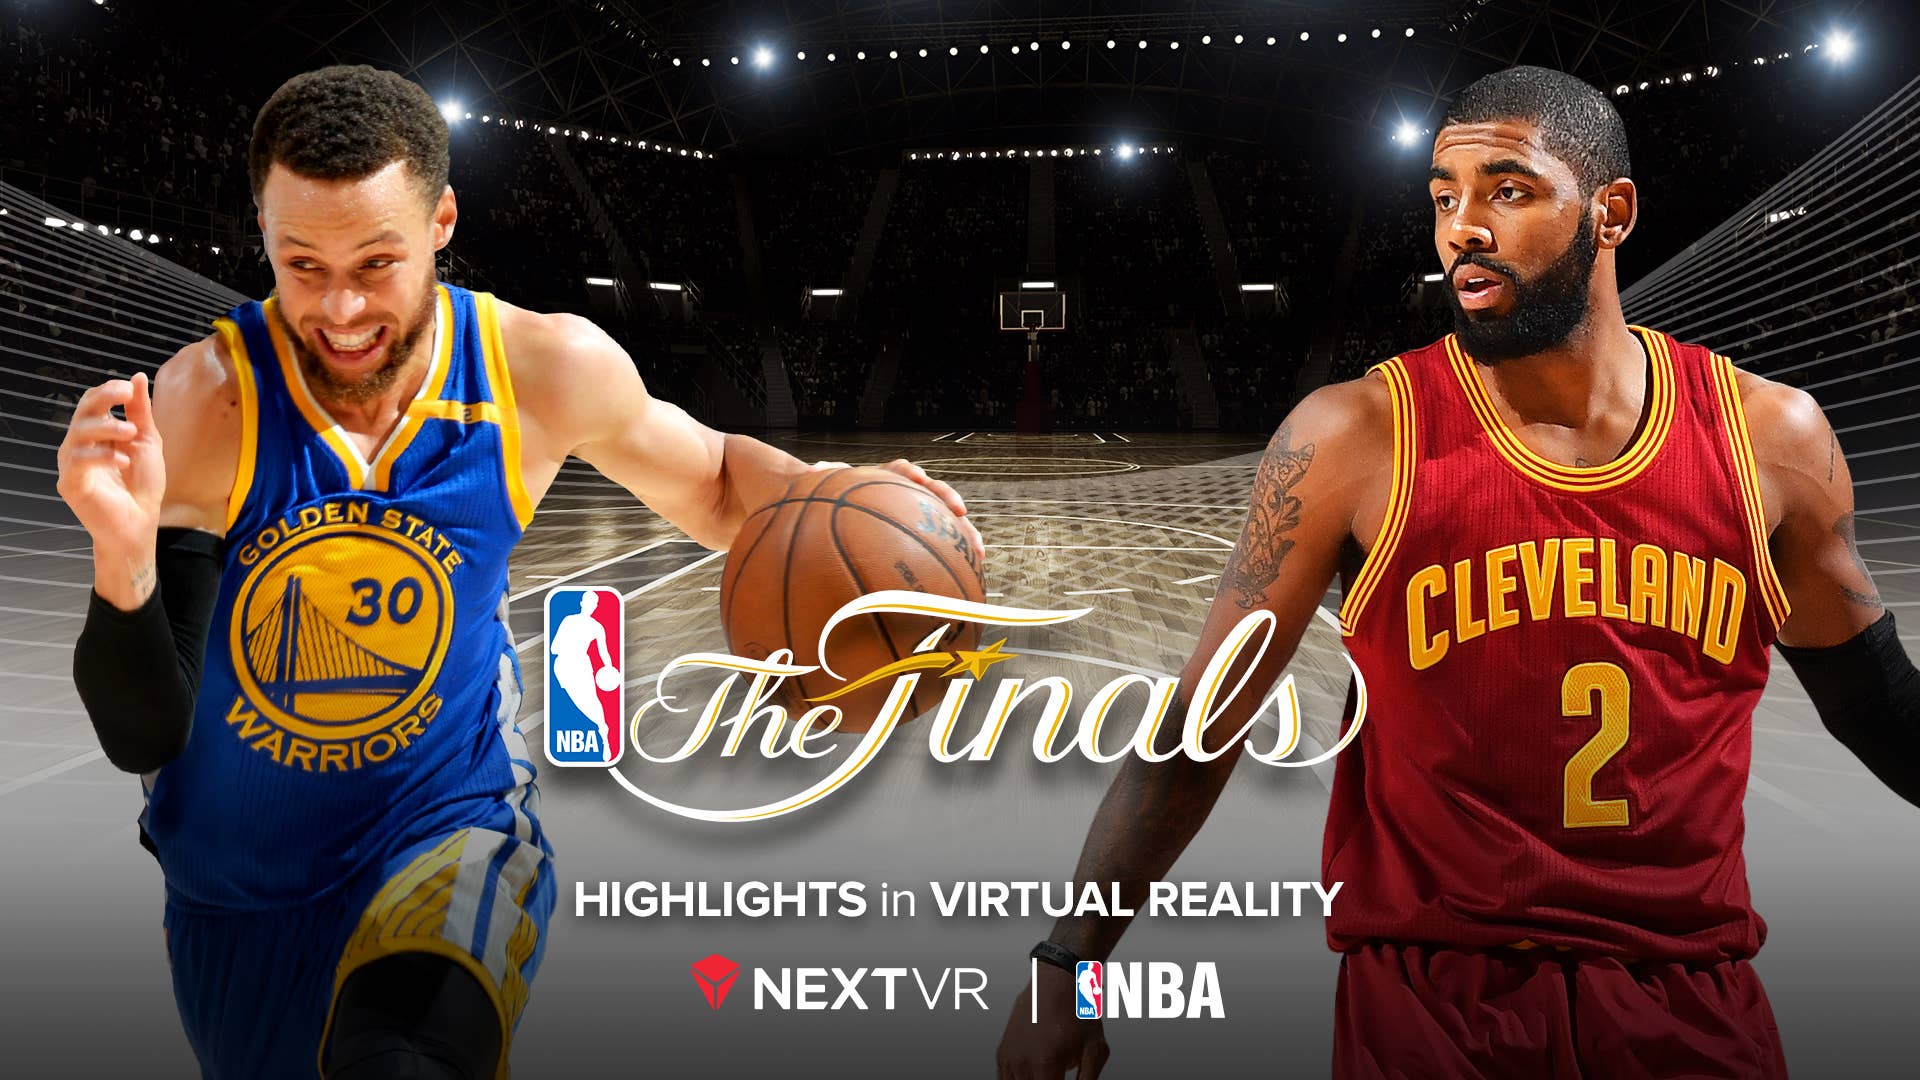 VR NBA FINALS PR Image